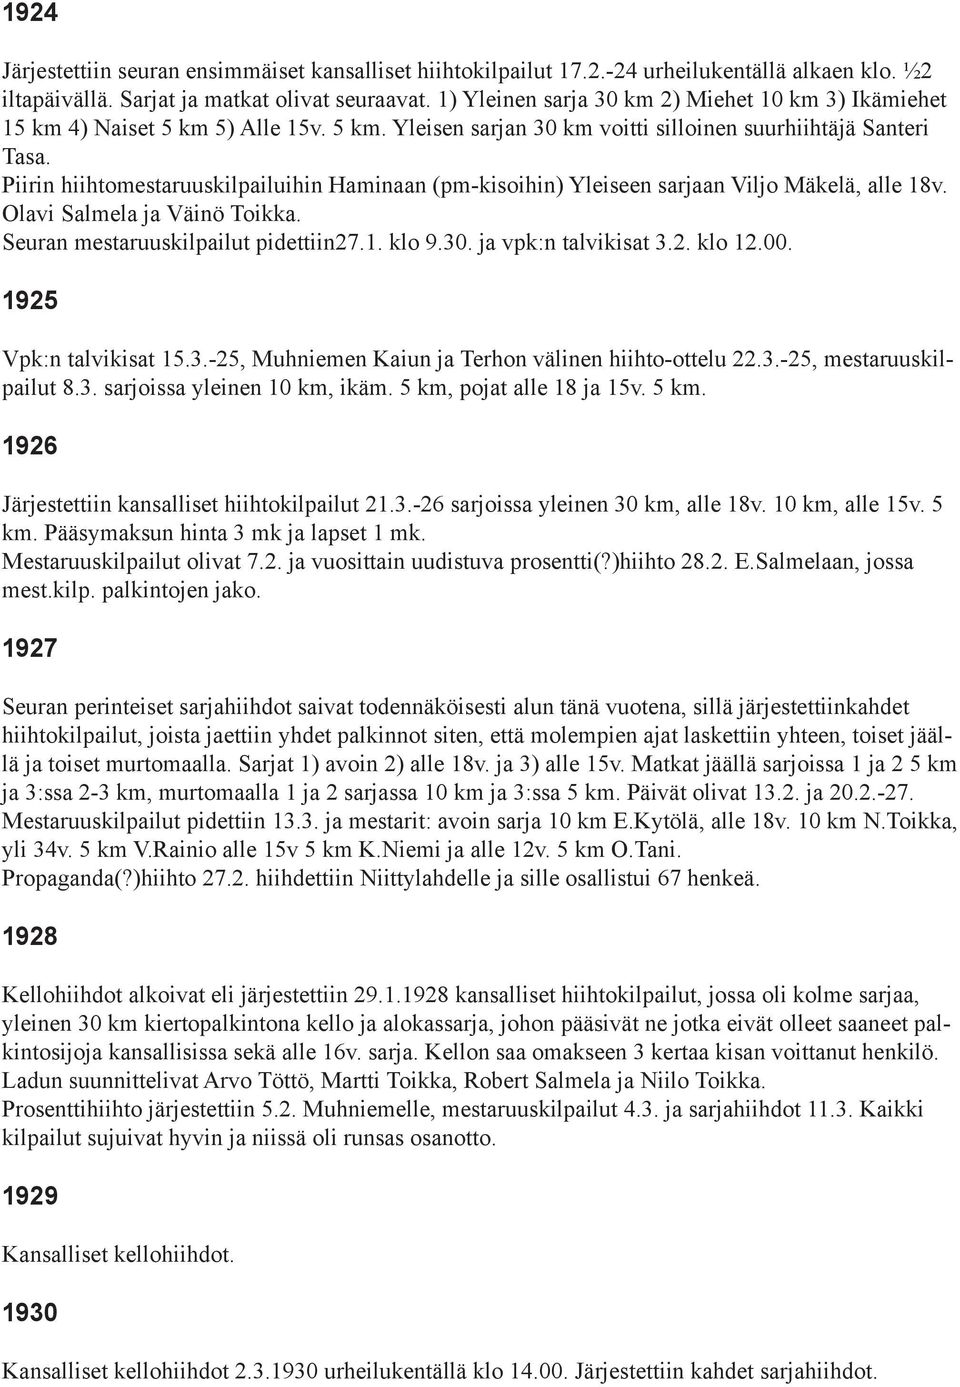 Piirin hiihtomestaruuskilpailuihin Haminaan (pm-kisoihin) Yleiseen sarjaan Viljo Mäkelä, alle 18v. Olavi Salmela ja Väinö Toikka. Seuran mestaruuskilpailut pidettiin27.1. klo 9.30.